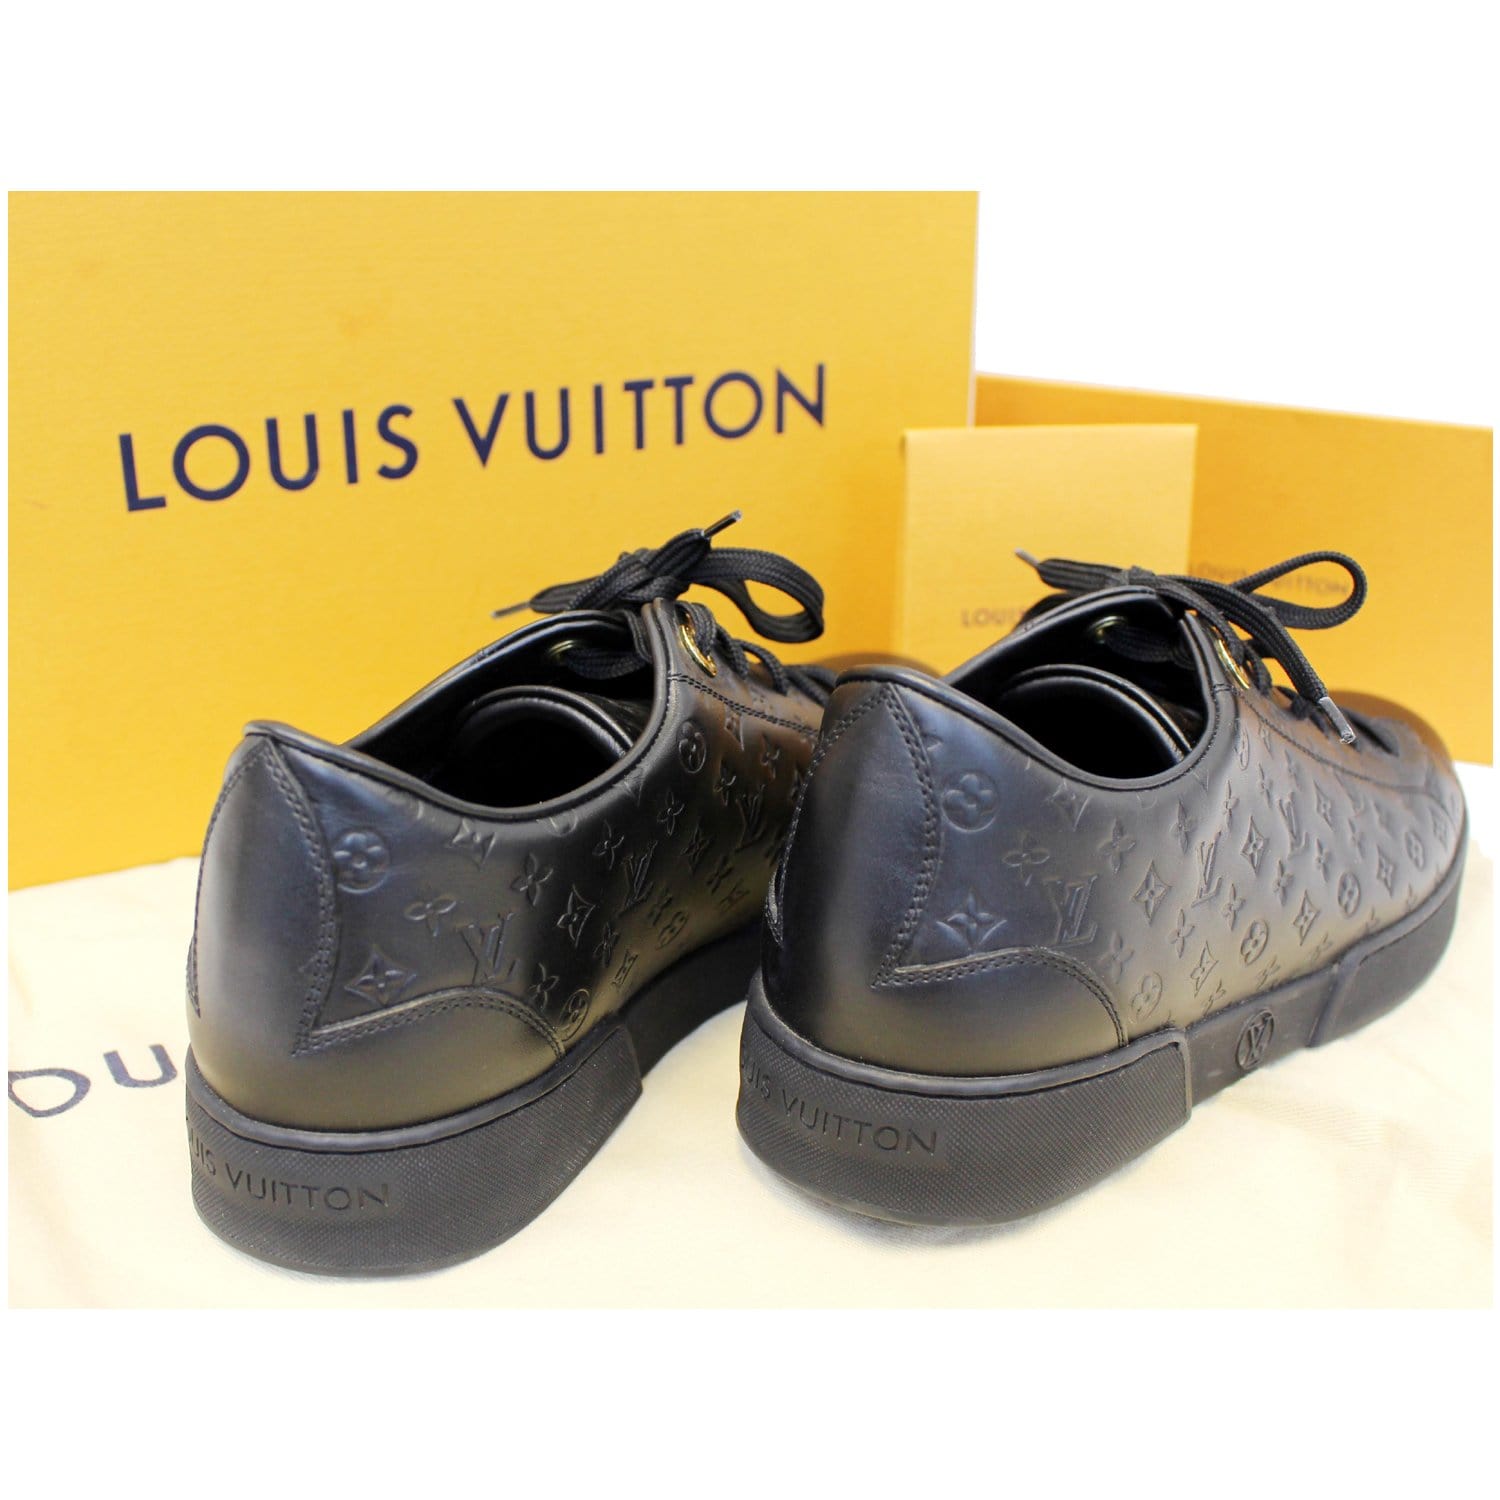 Empreinte, bộ sưu tập trang sức Louis Vuitton